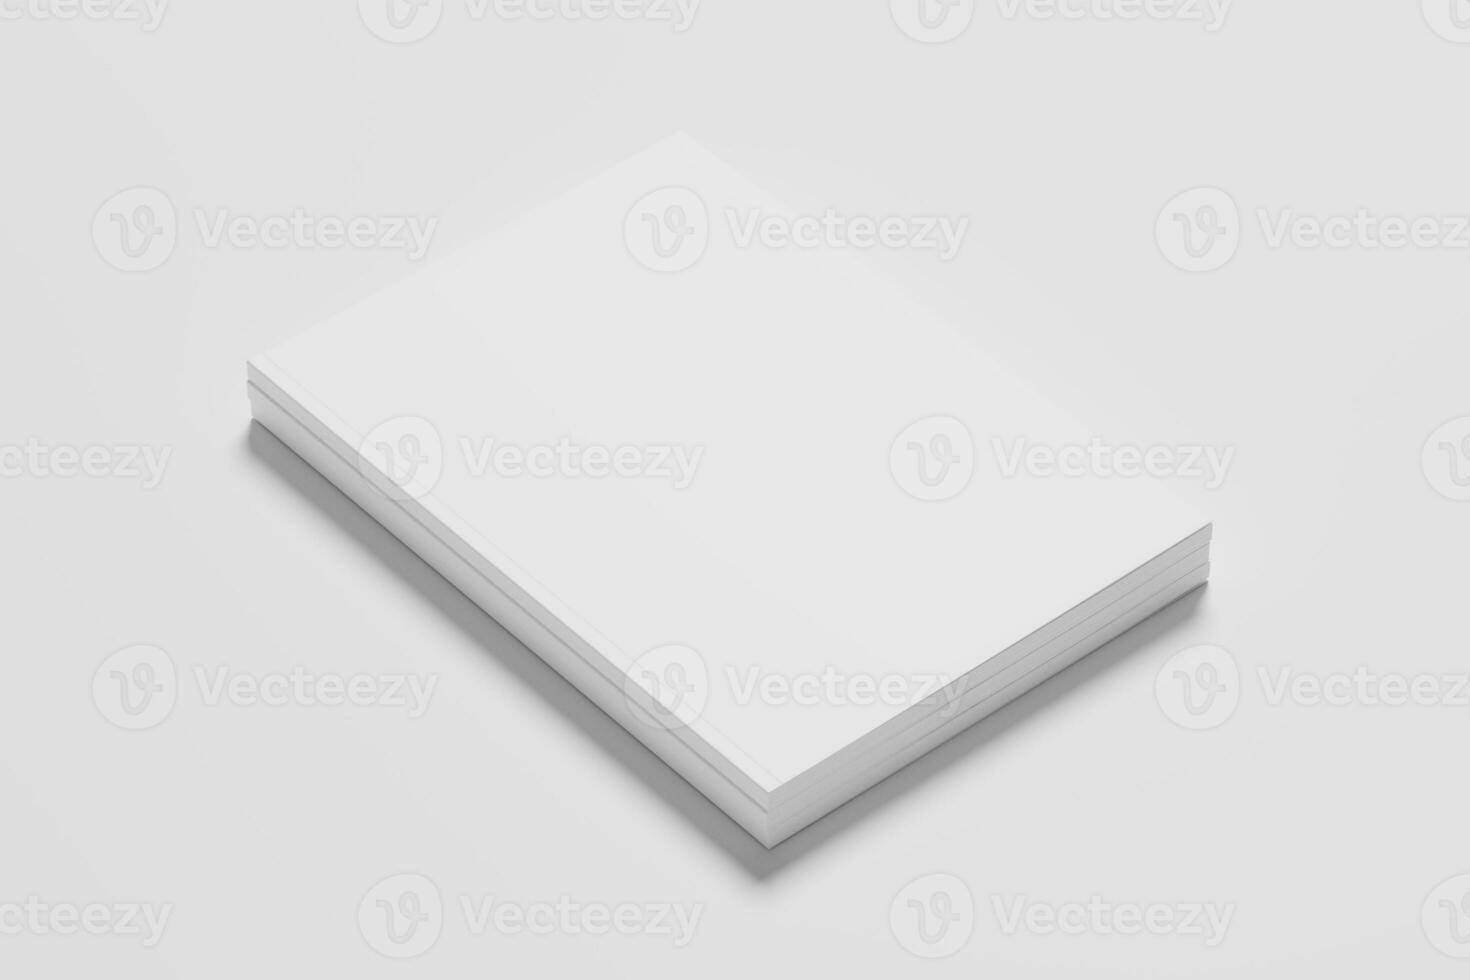 noi lettera dimensione rivista opuscolo 3d interpretazione bianca vuoto modello foto